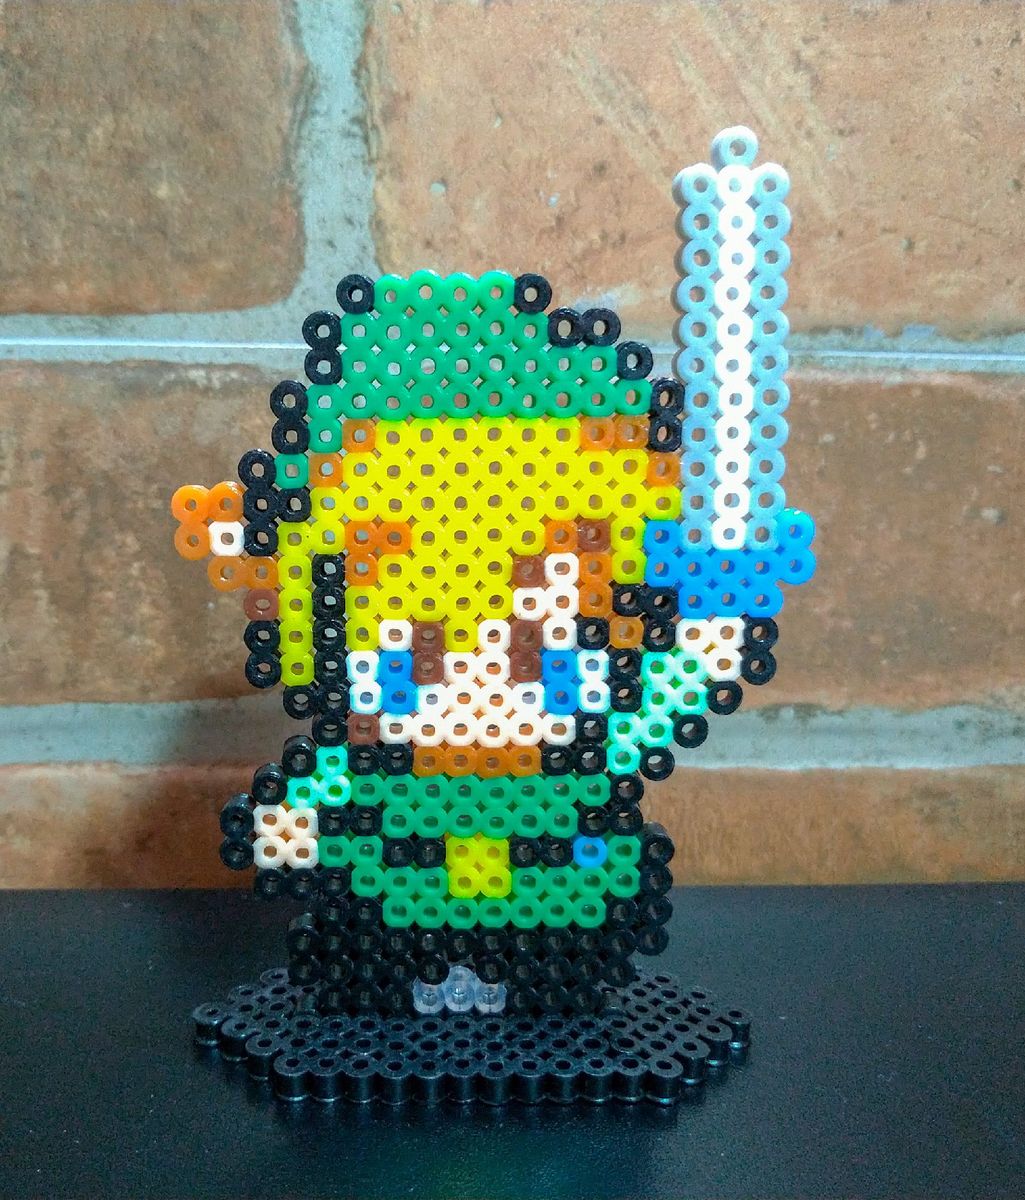 Legend of Zelda Pixel Art – BRIK